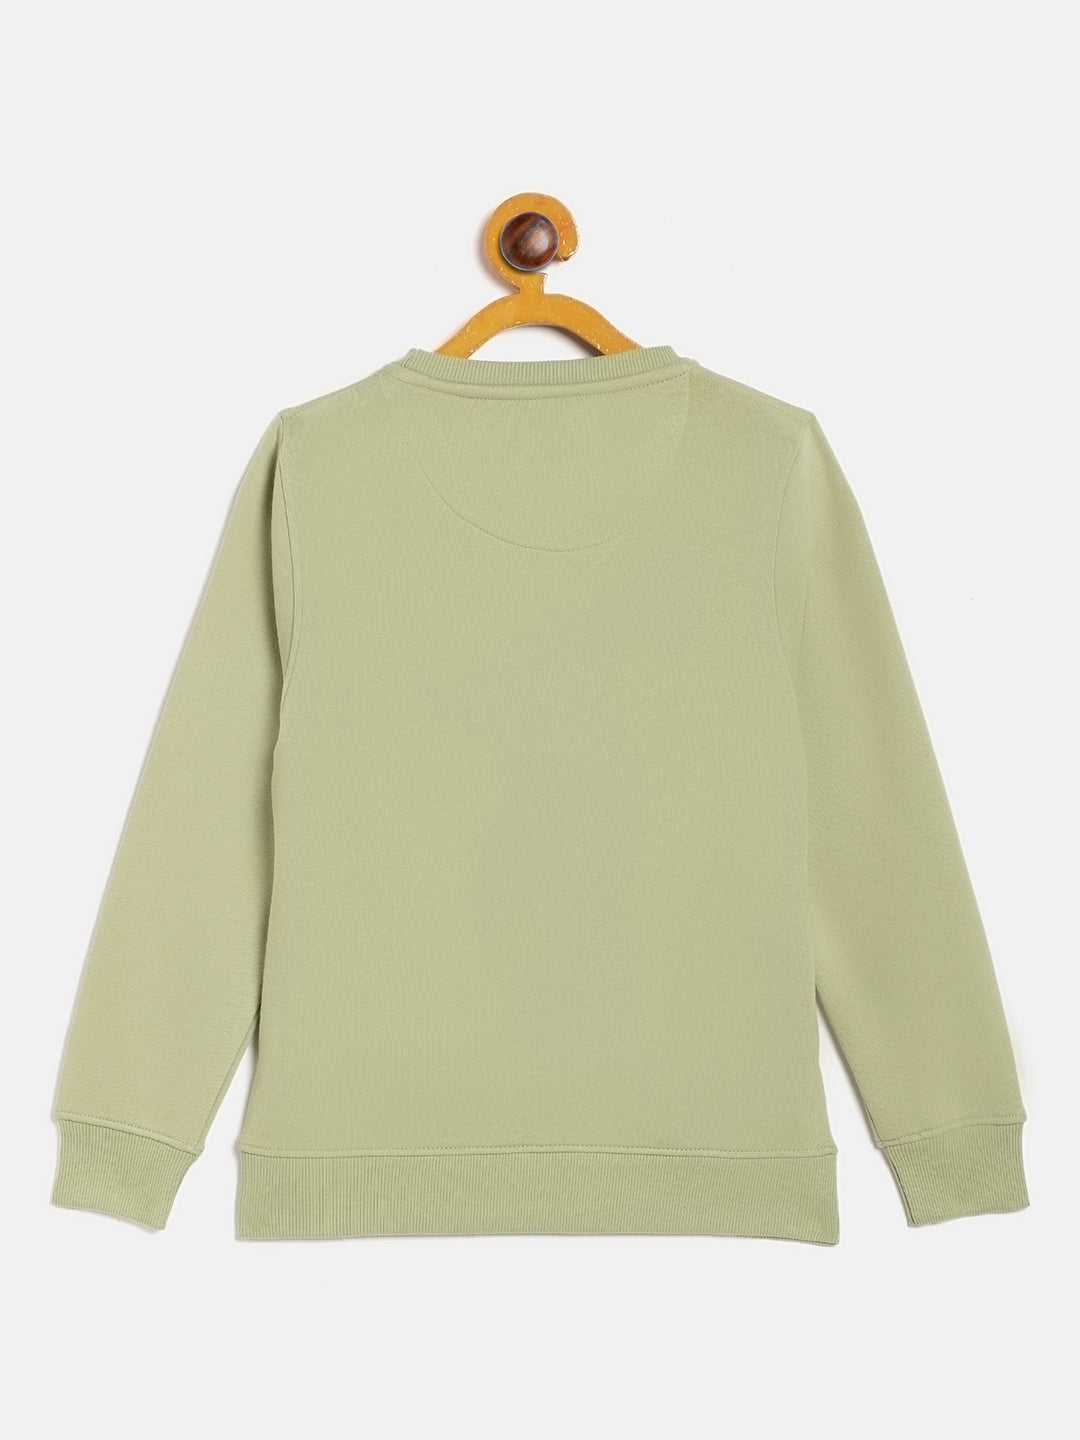 Olive Round Neck Sweatshirt - Girls Sweatshirts